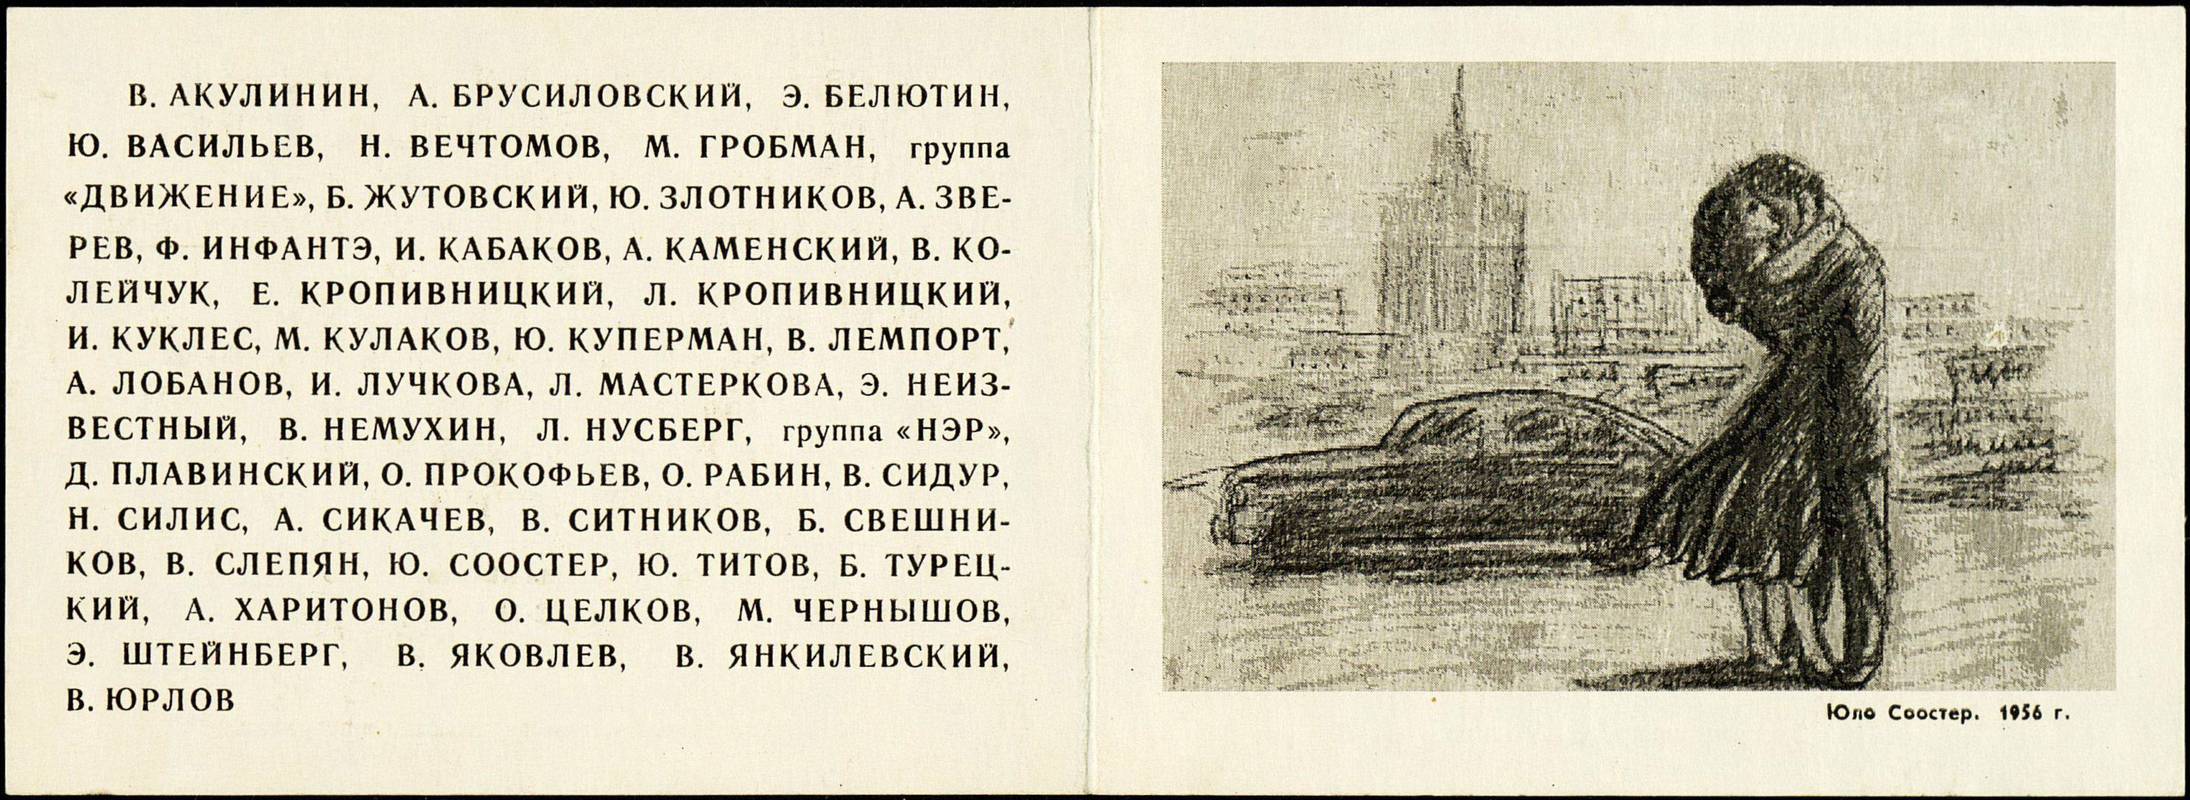 Эстетика оттепели: новое русское искусство между 1956 и 1962 гг.